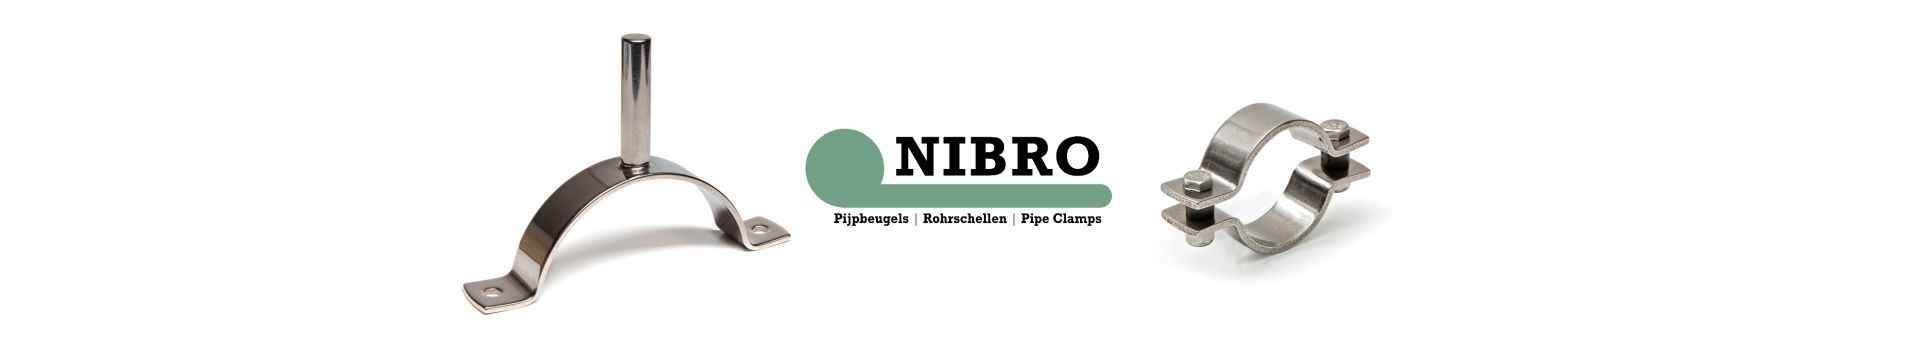 banner-nibrov3